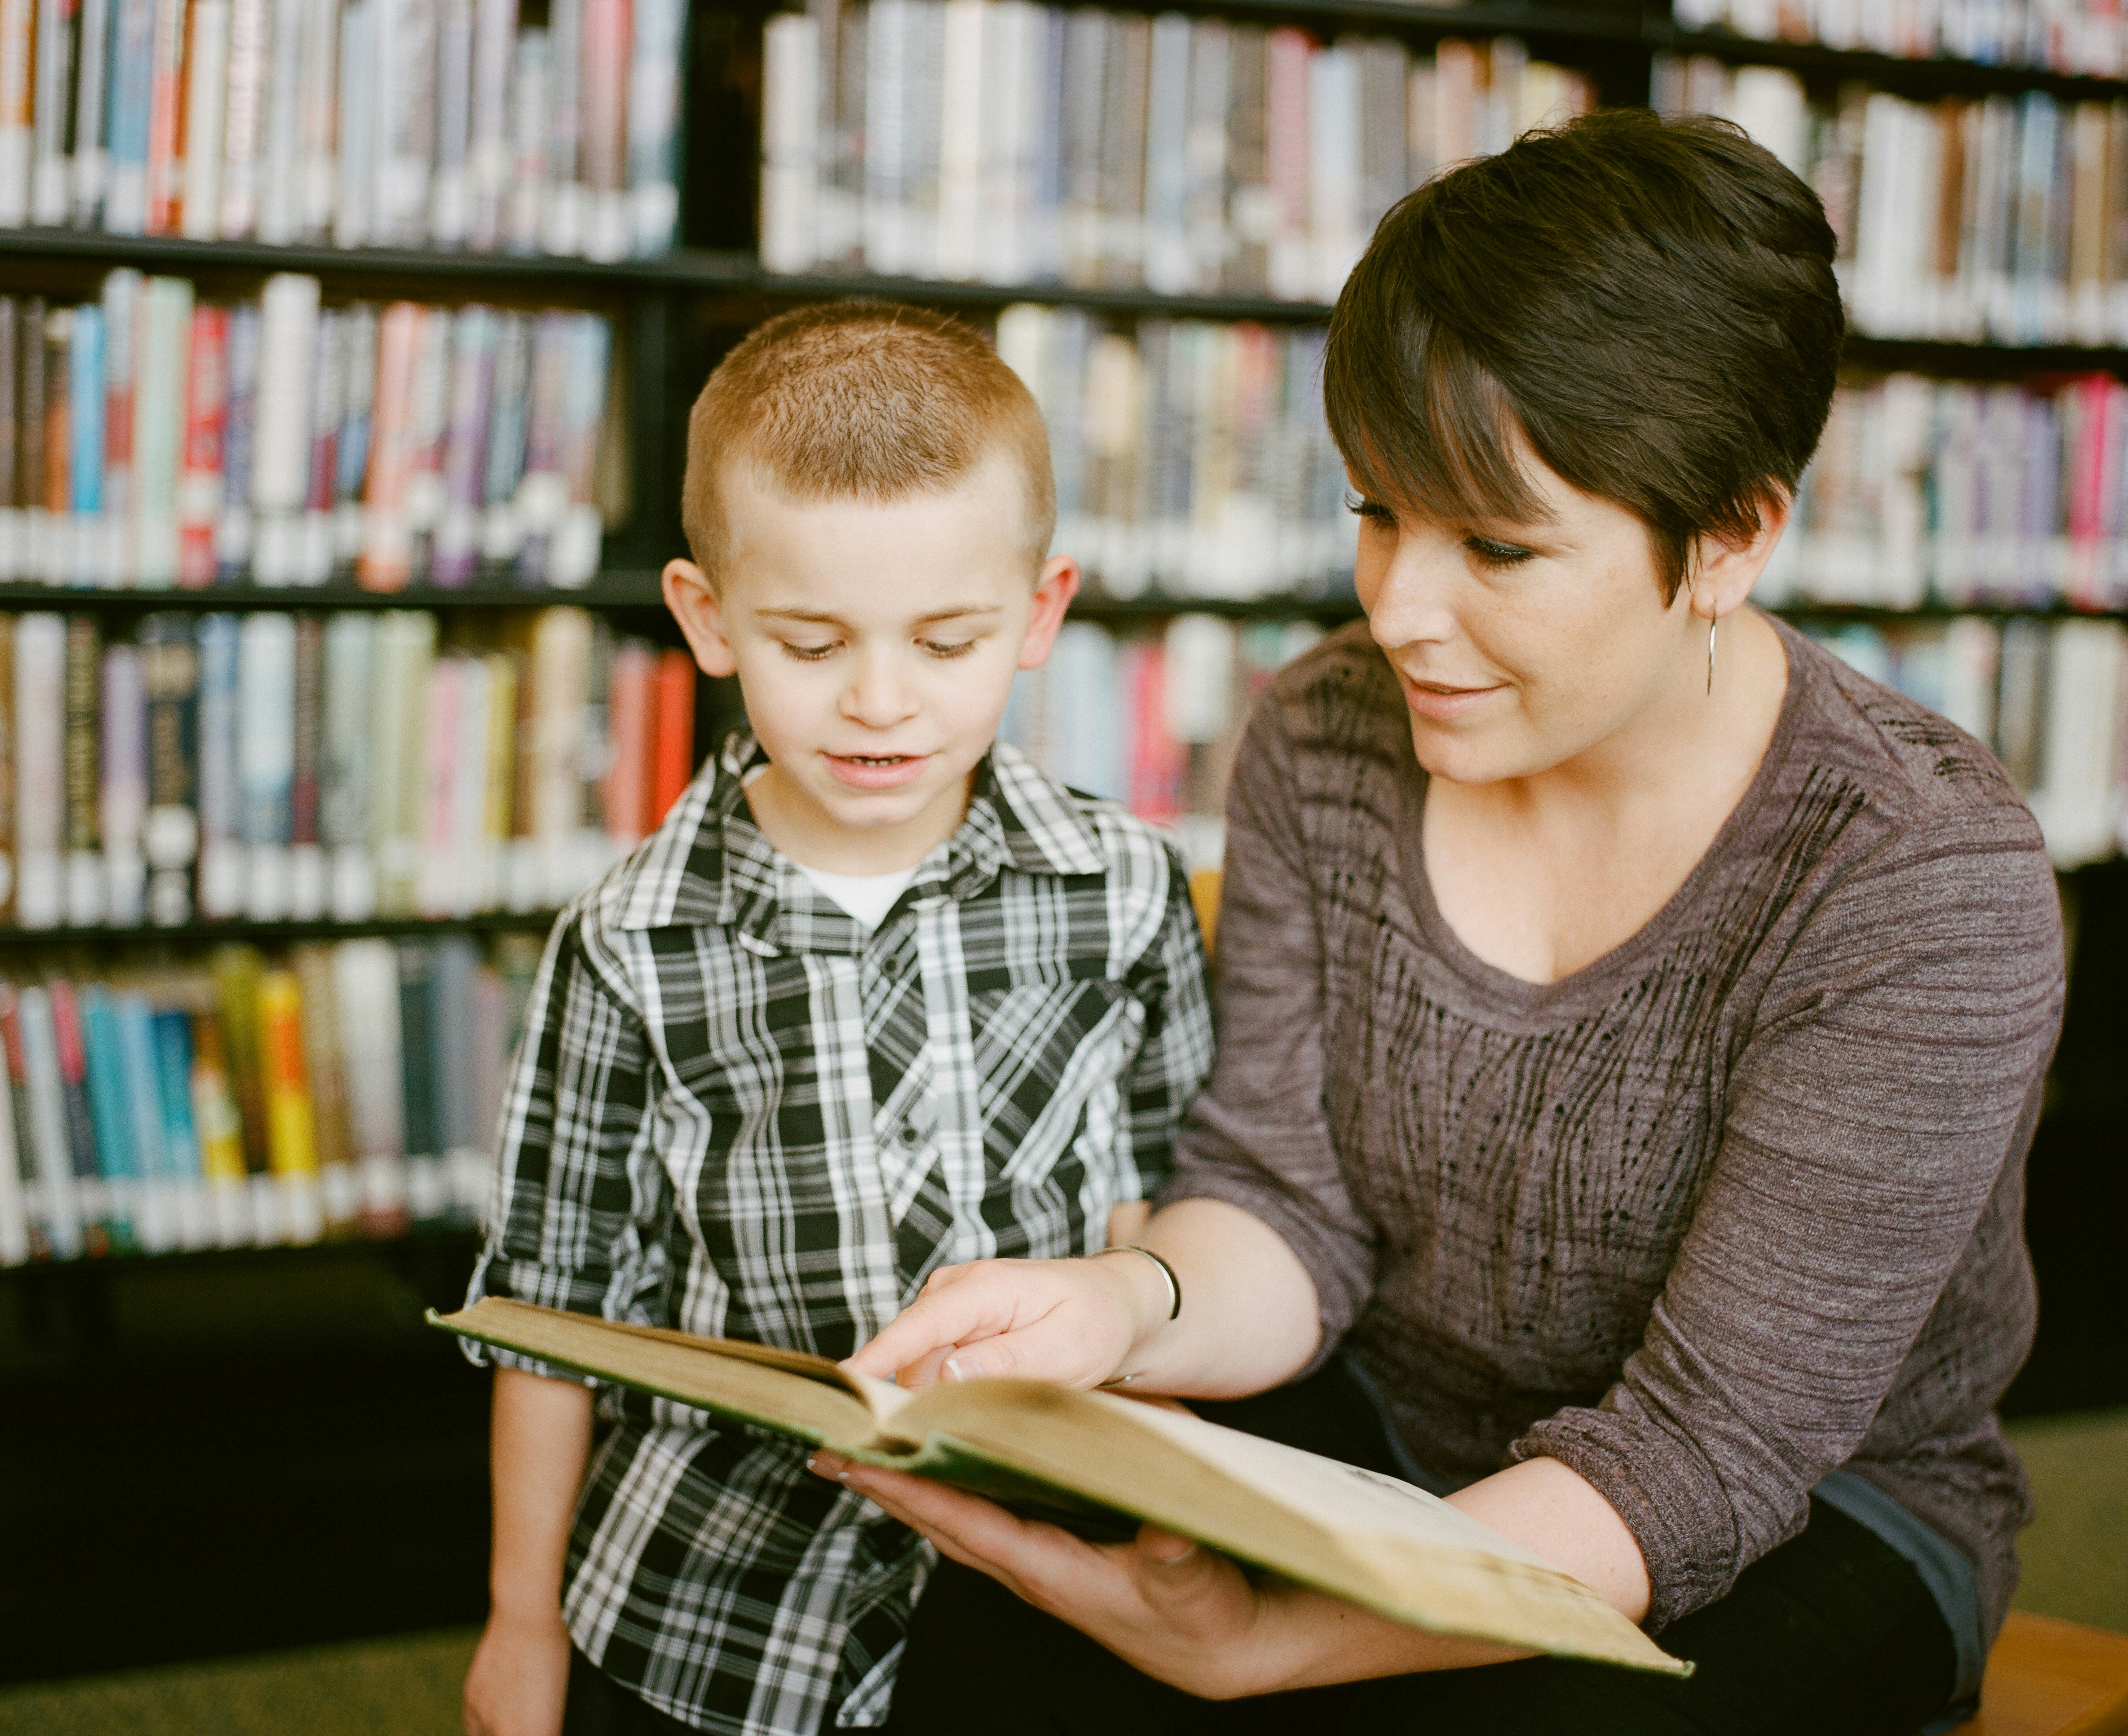 A teacher shows a boy a book.